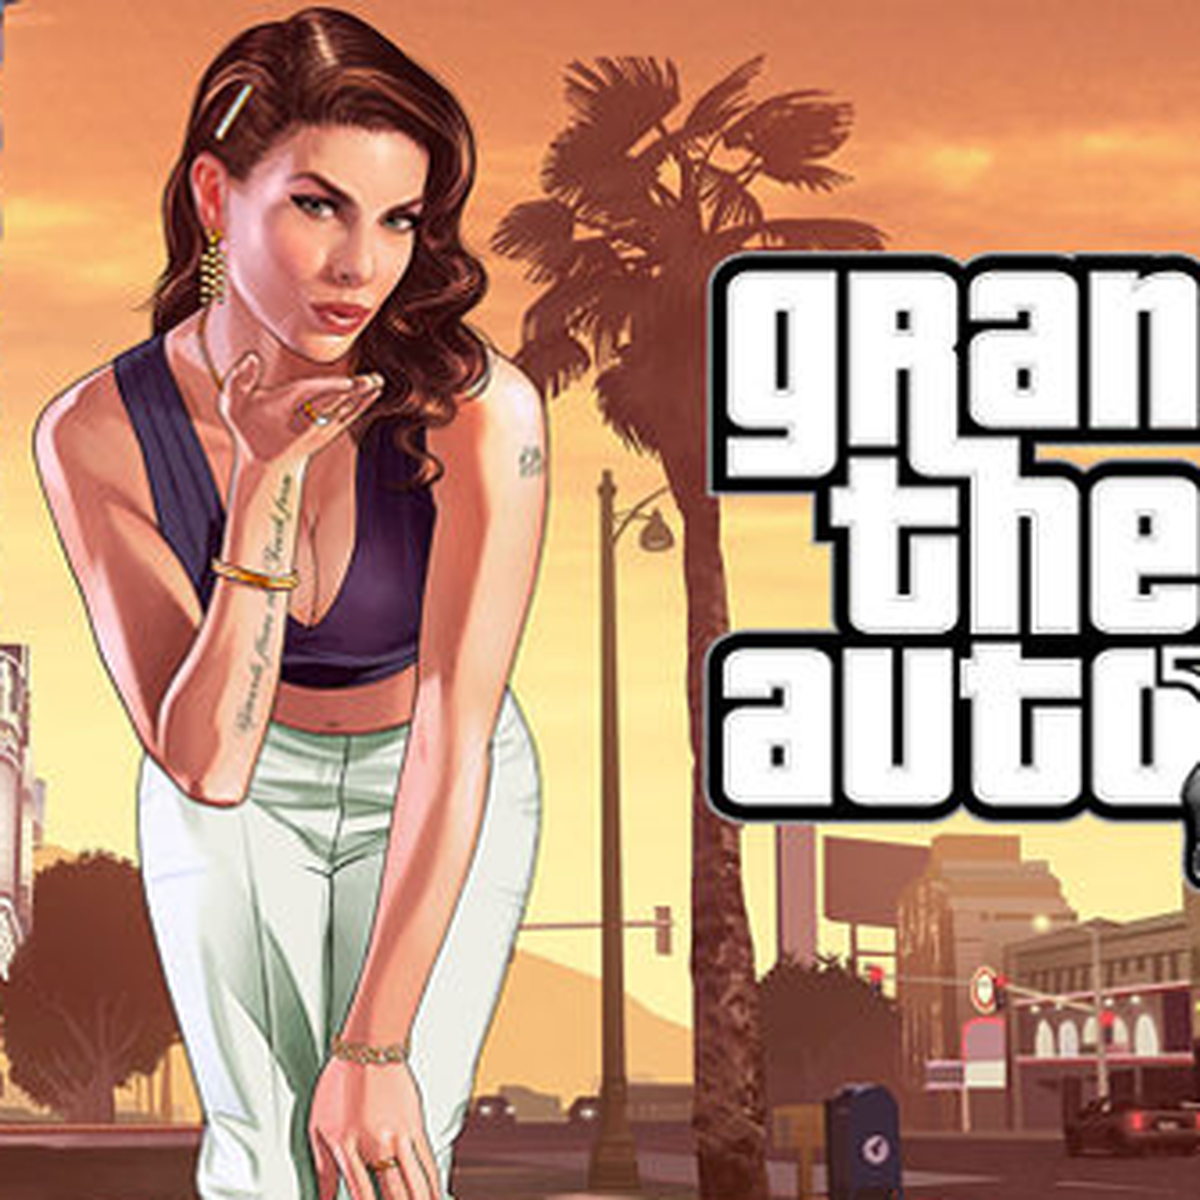 Grand Theft Auto V, análisis y opiniones del juego para PS5 y Xbox